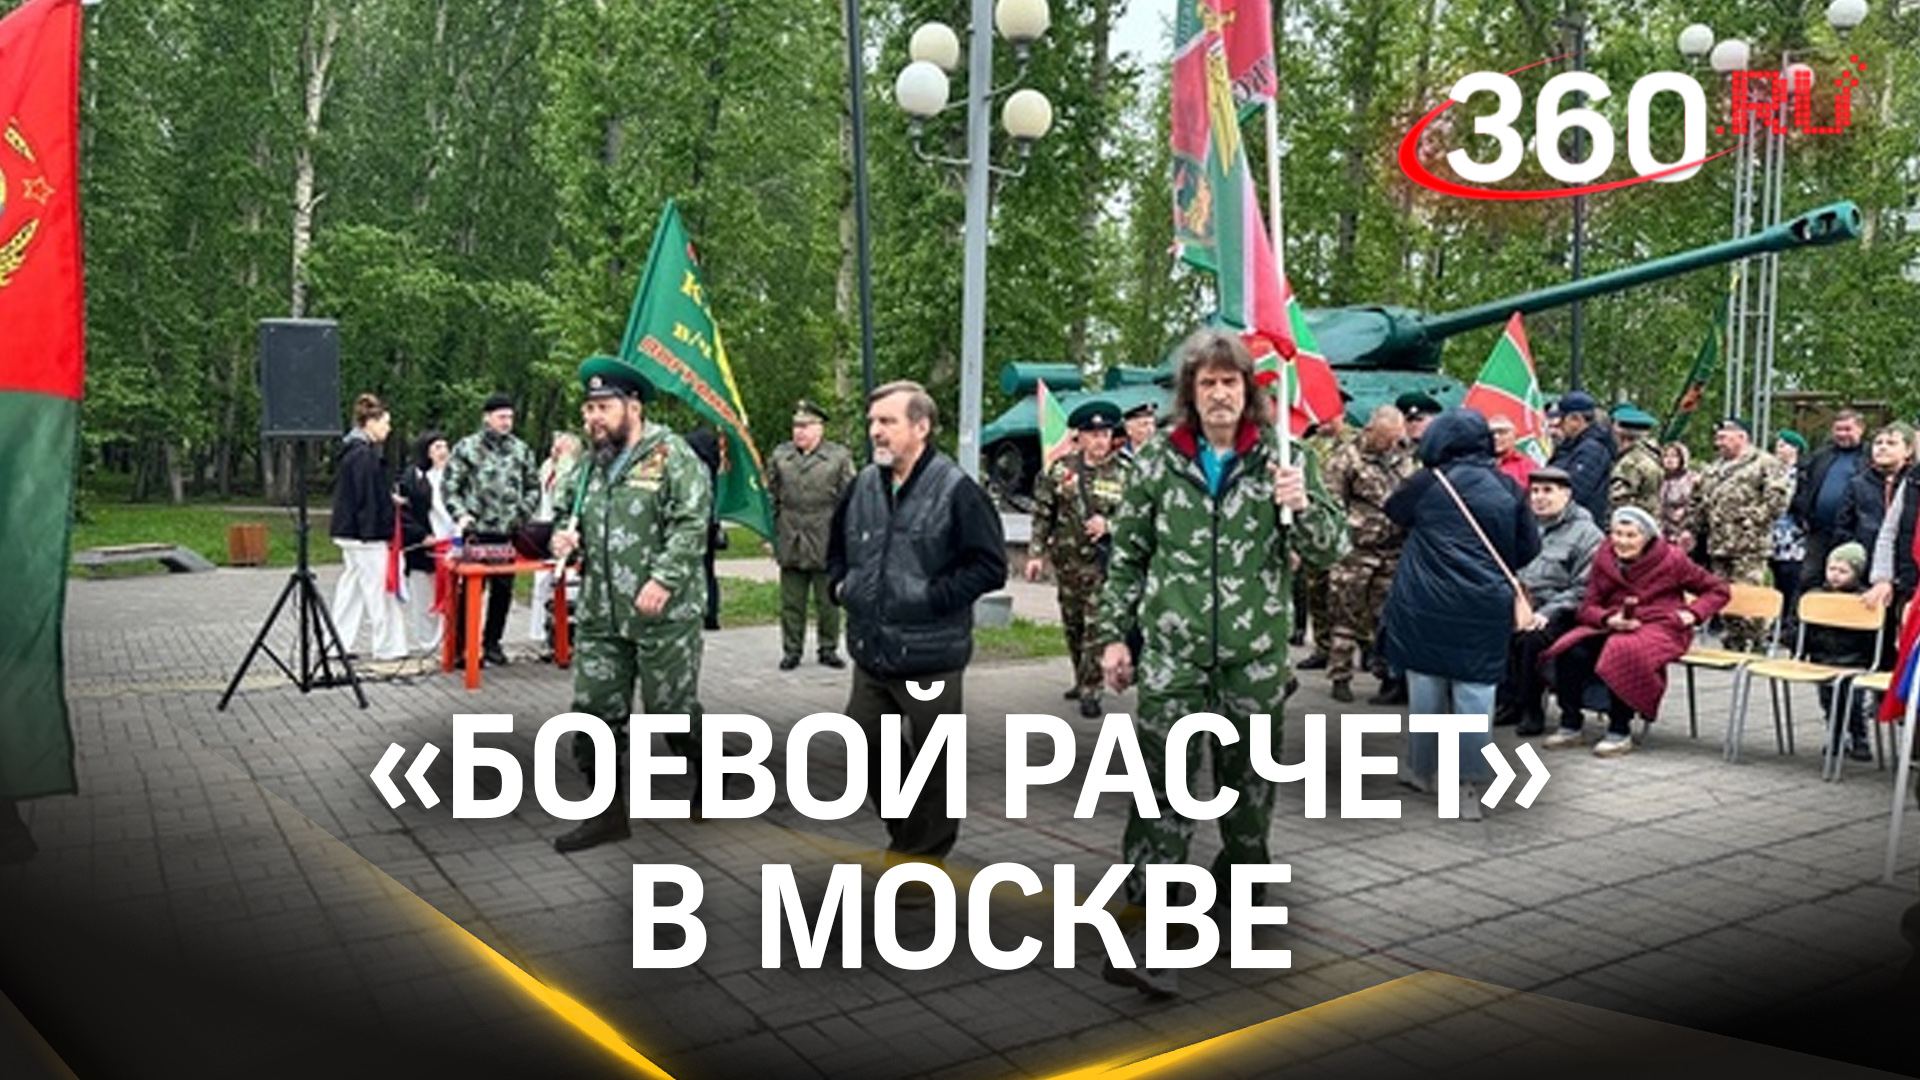 Патриотические песни, улыбки и гордость: как прошла акция «Боевой расчет» в Москве